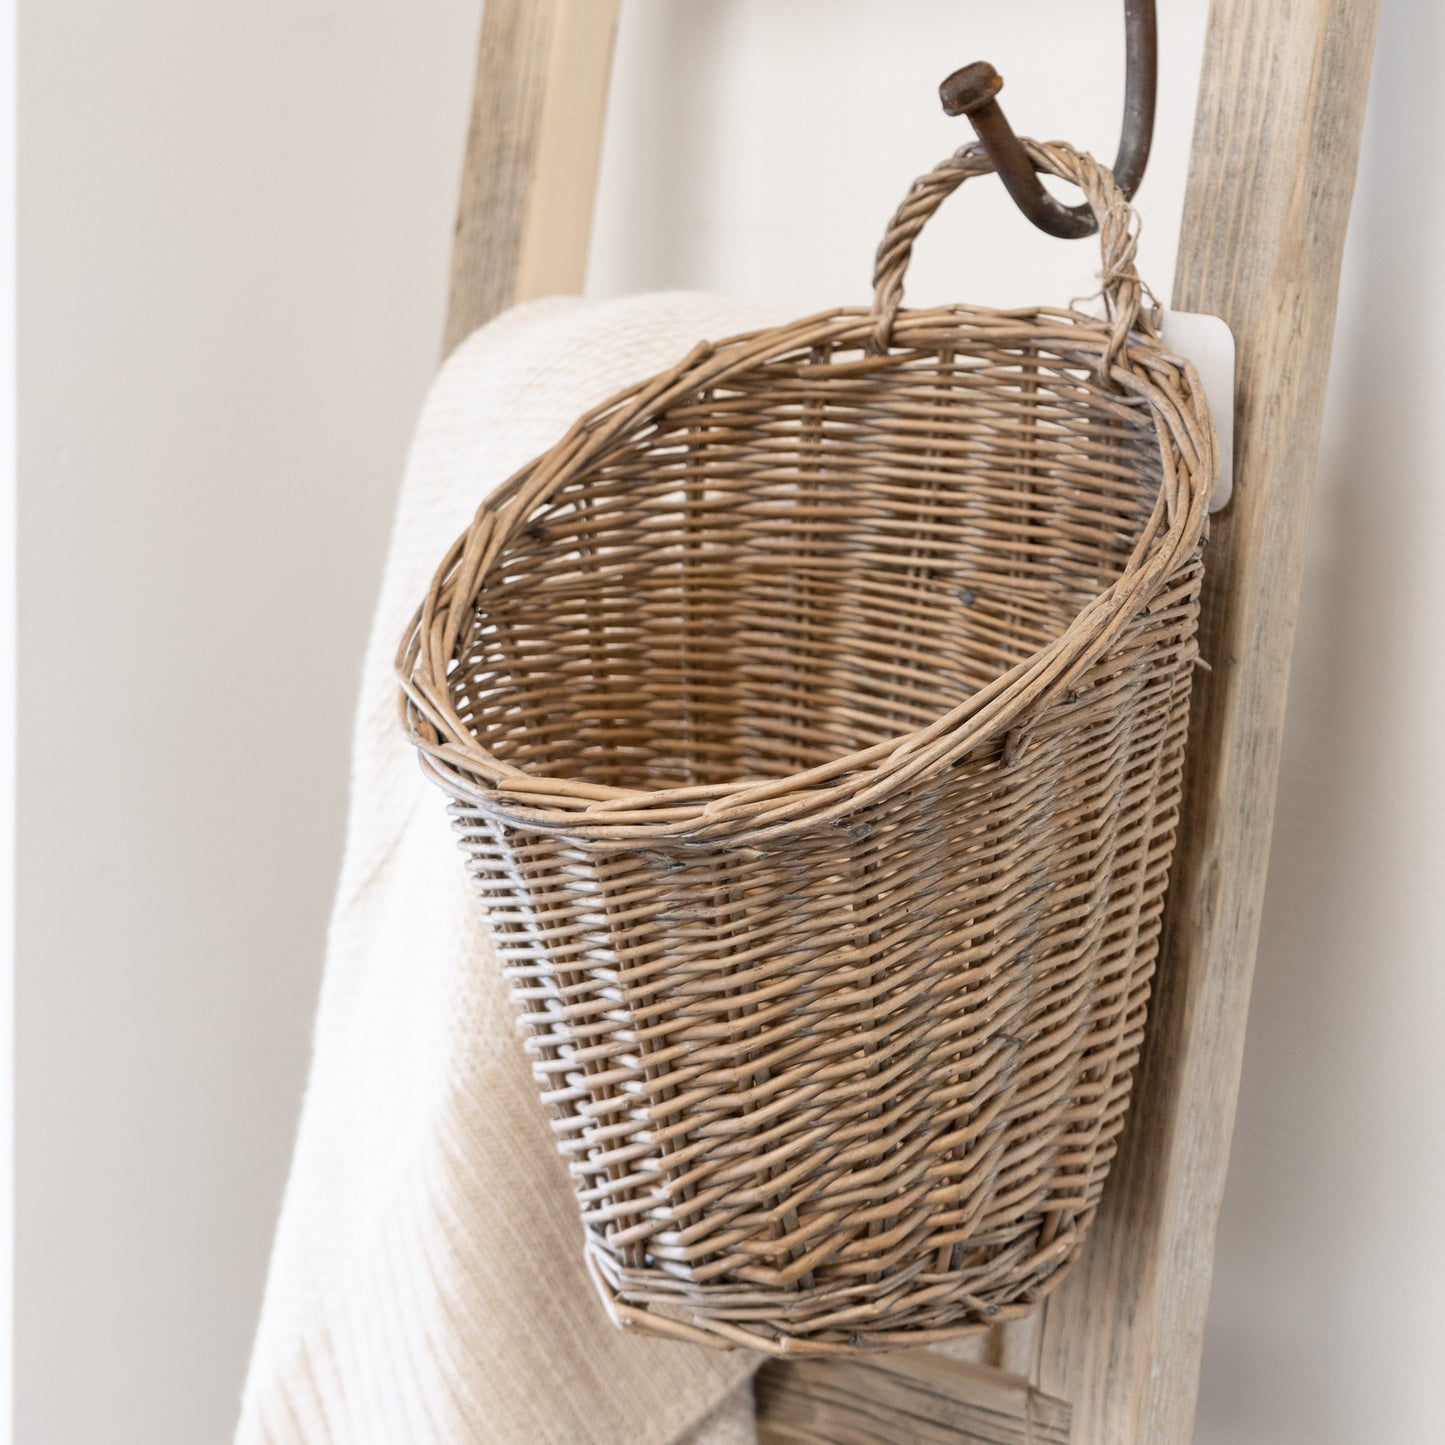 Hanging Rattan Basket